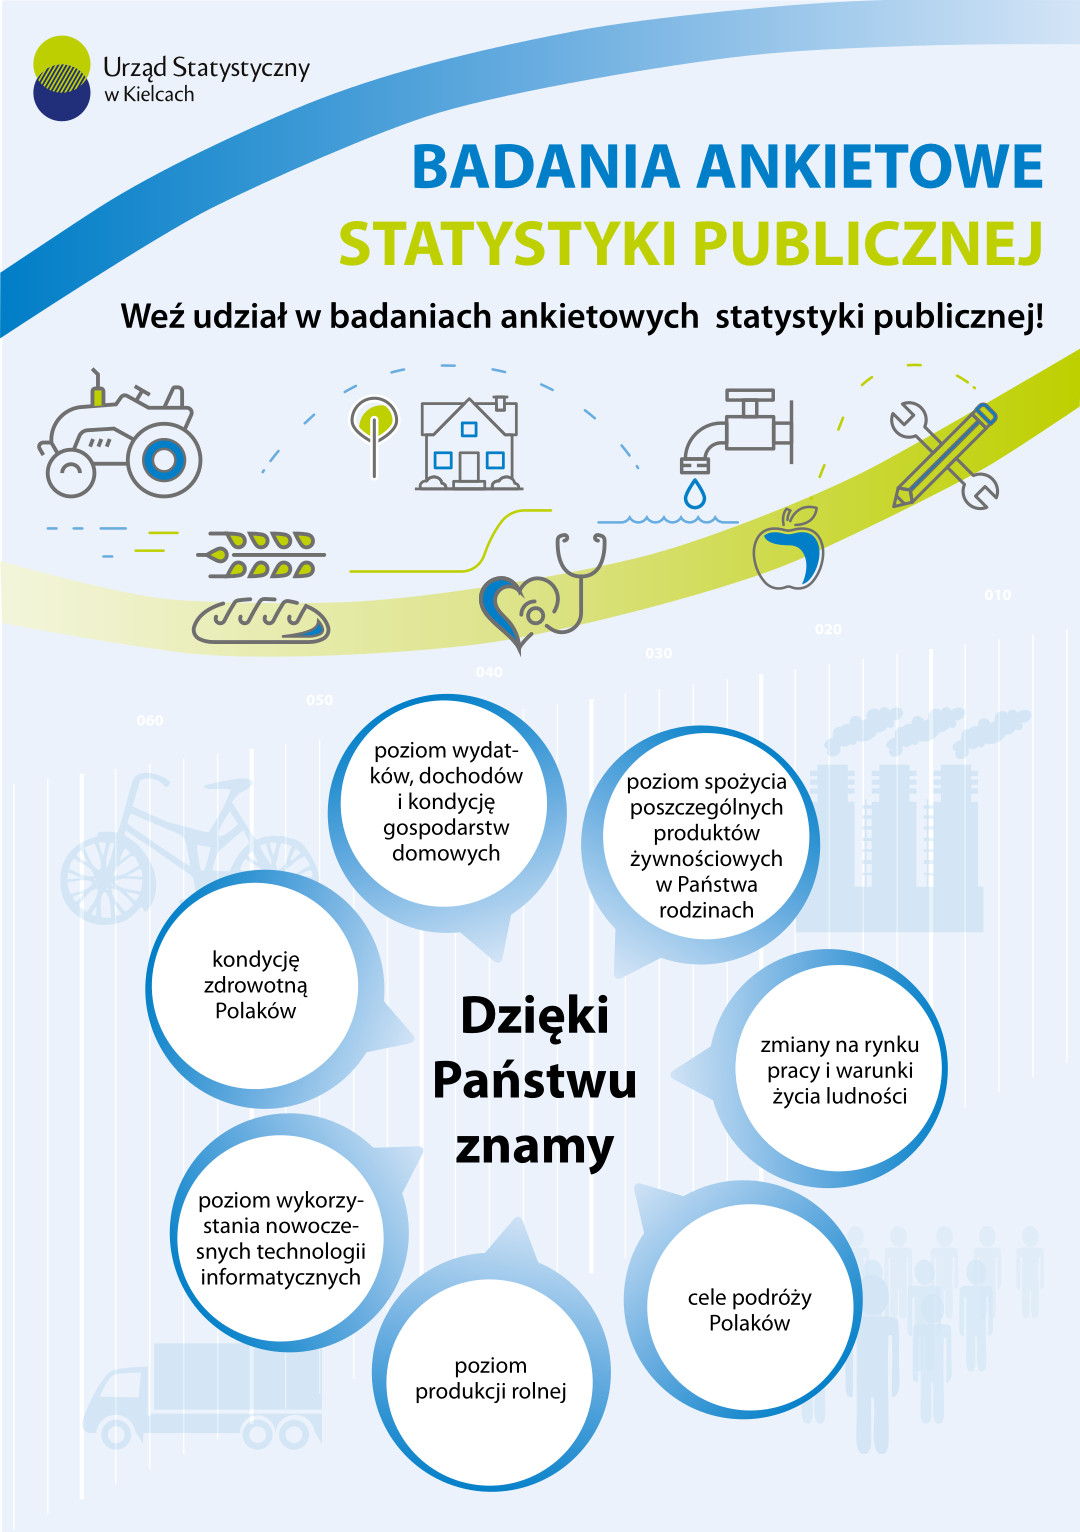 Strona 1 ulotki Badania ankietowe realizowane przez Urząd Statystyczny w Kielcach